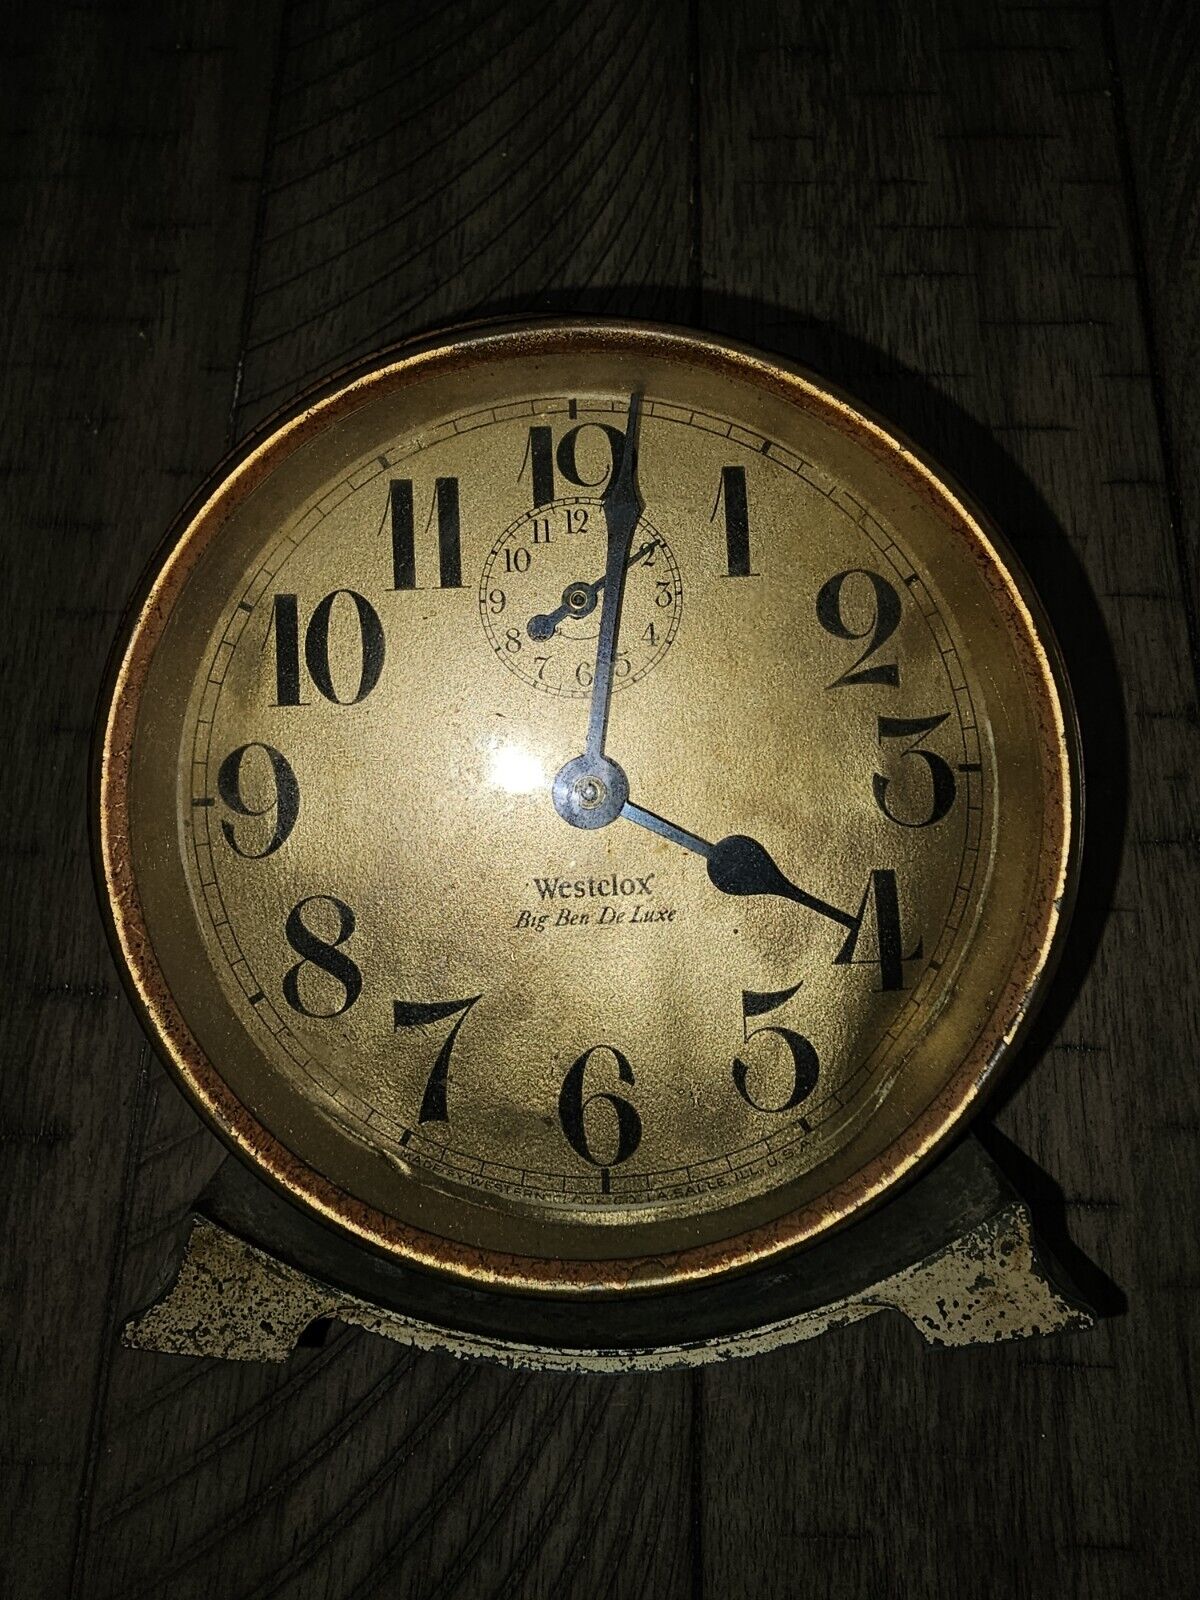 1920s Westclox Big Ben DE Luxe Alarm Clock